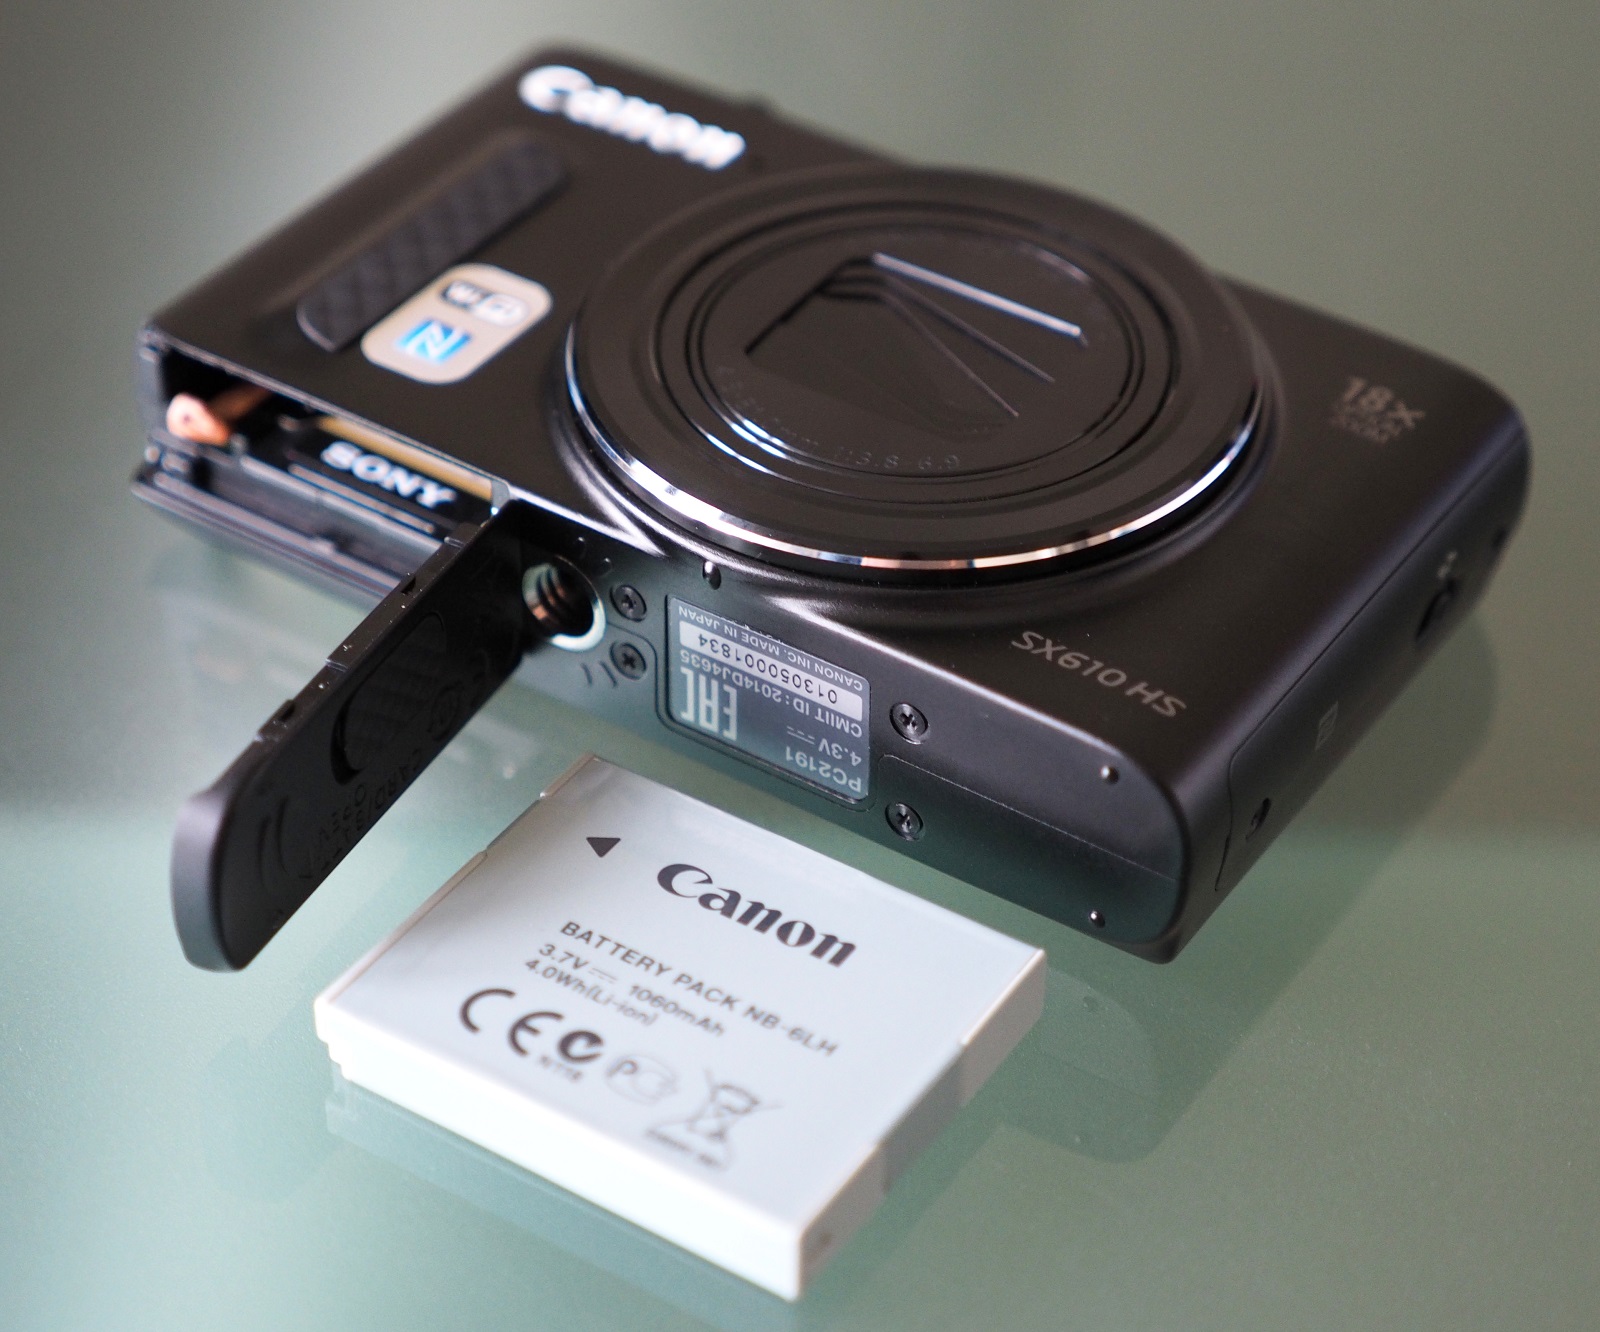 Canon Powershot SX610 HS Review